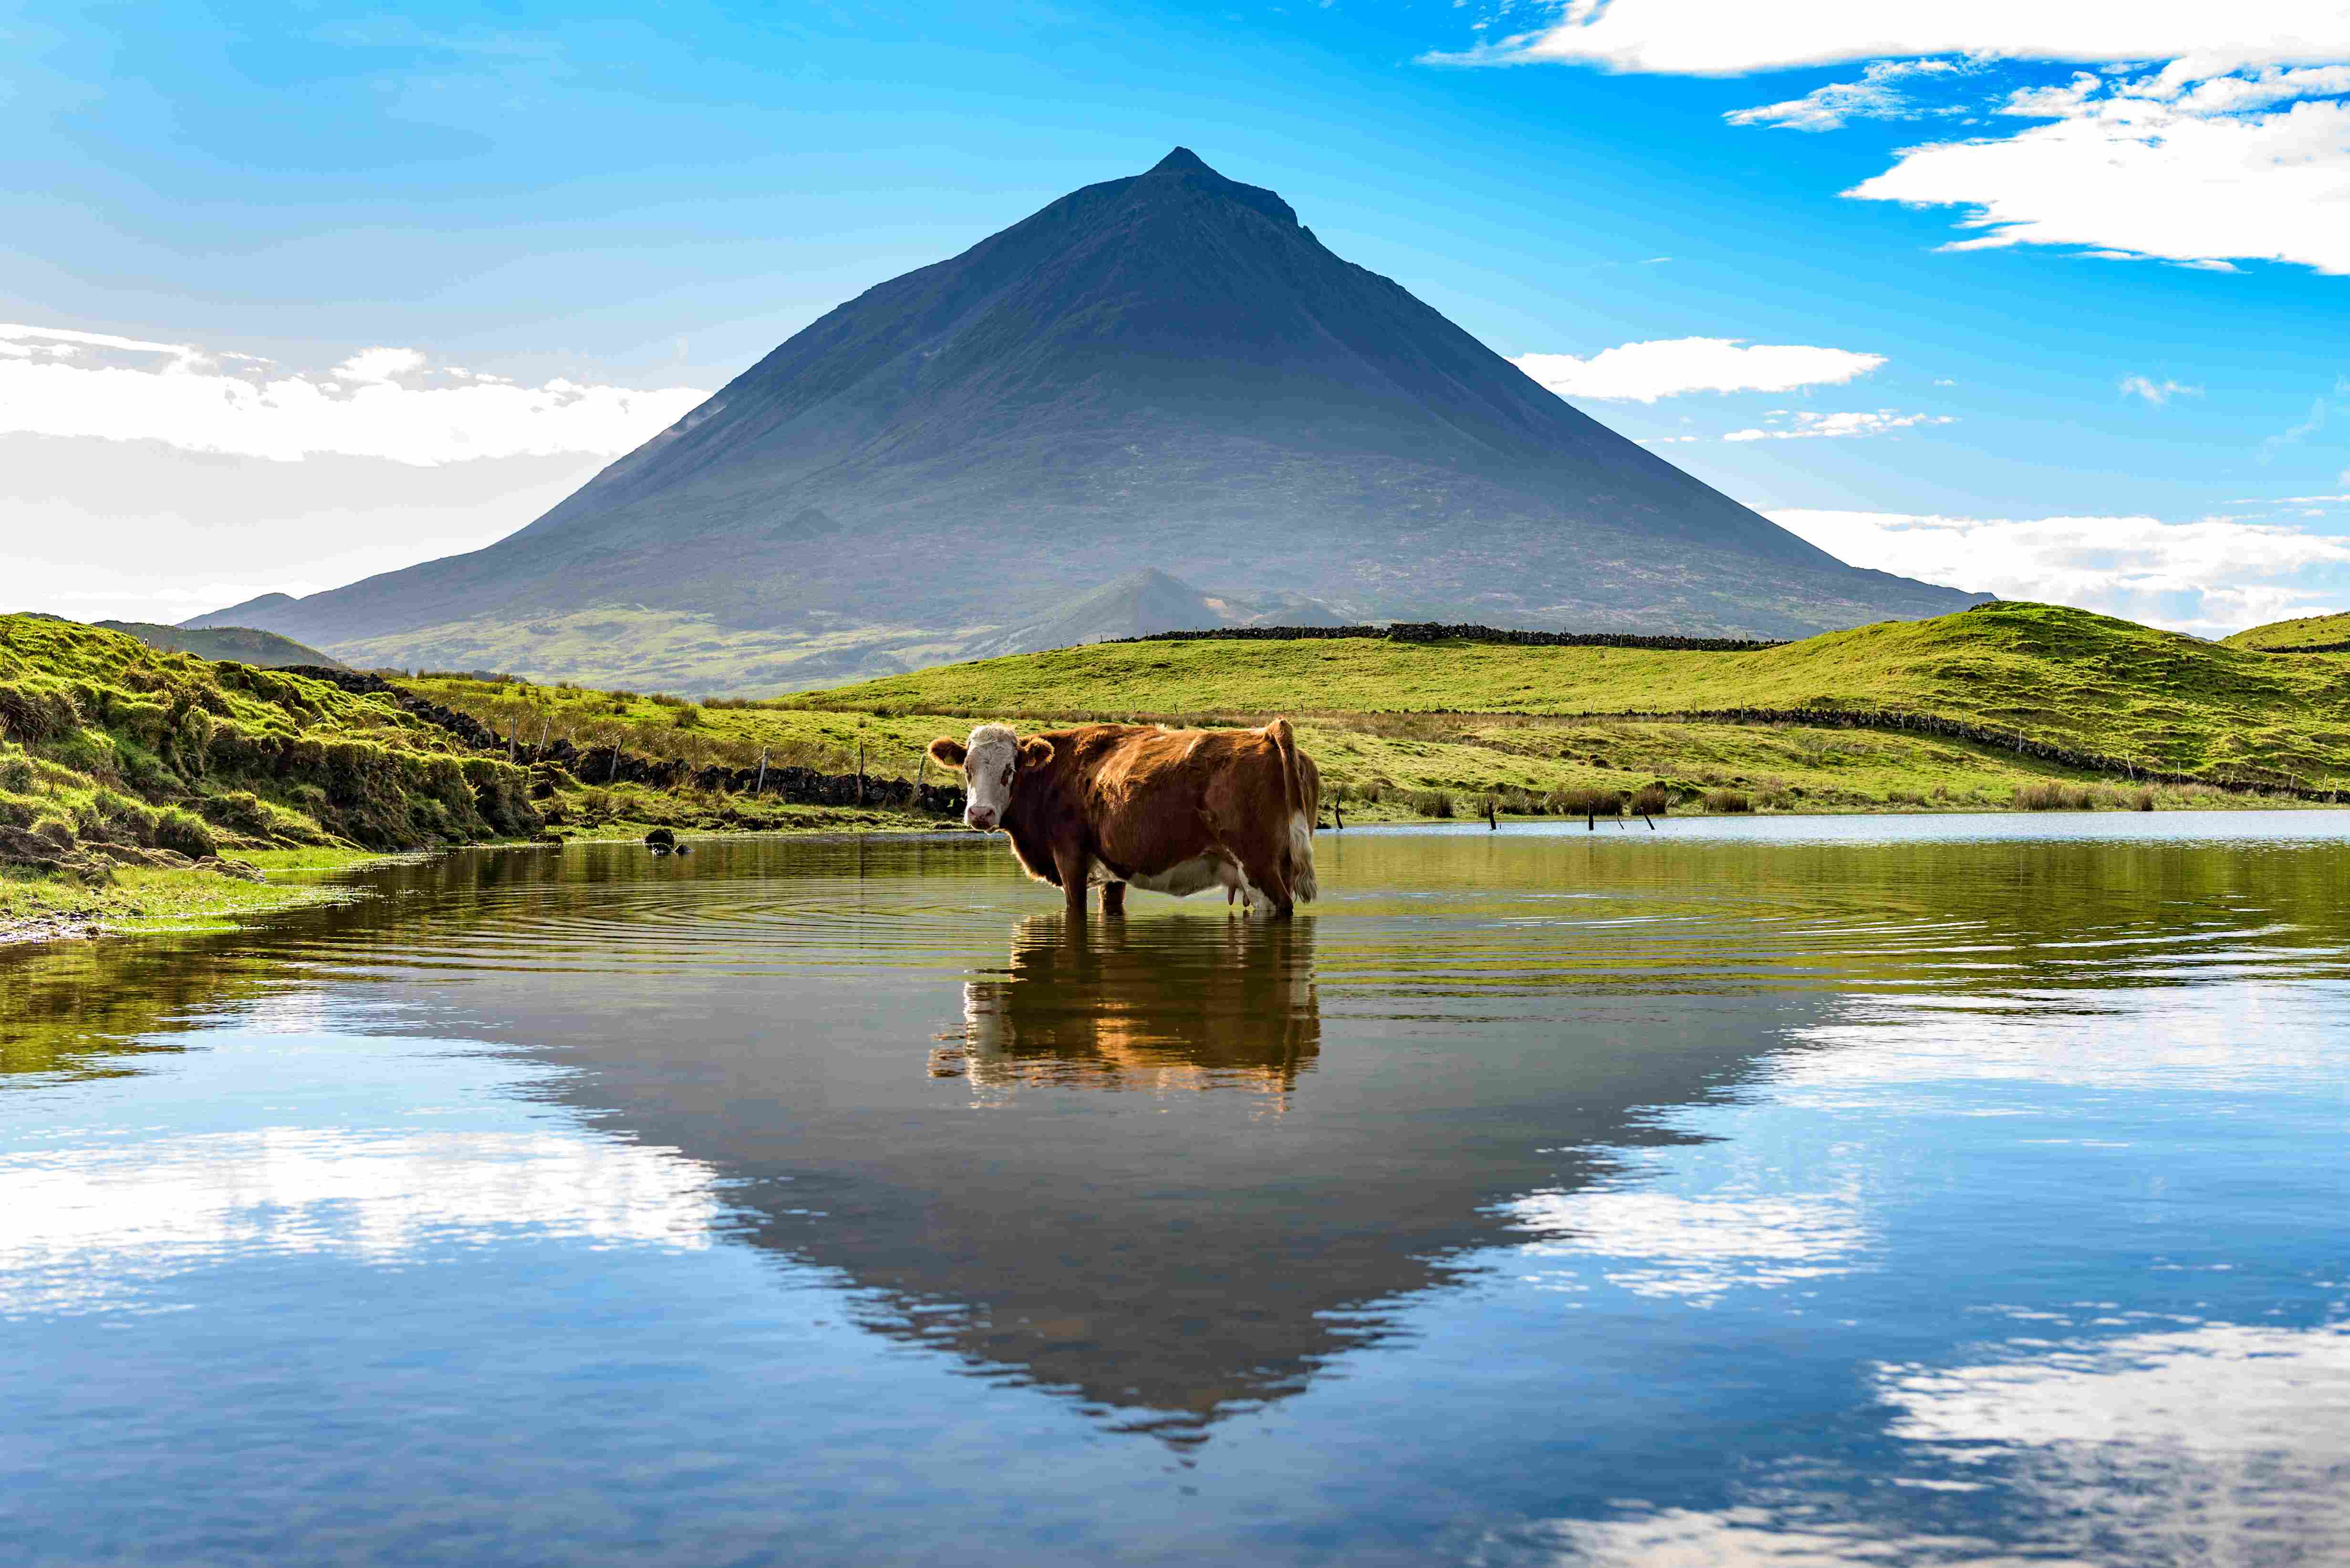 Les vaches sont caractéristiques du paysage açorien, ici devant le mont Pico.